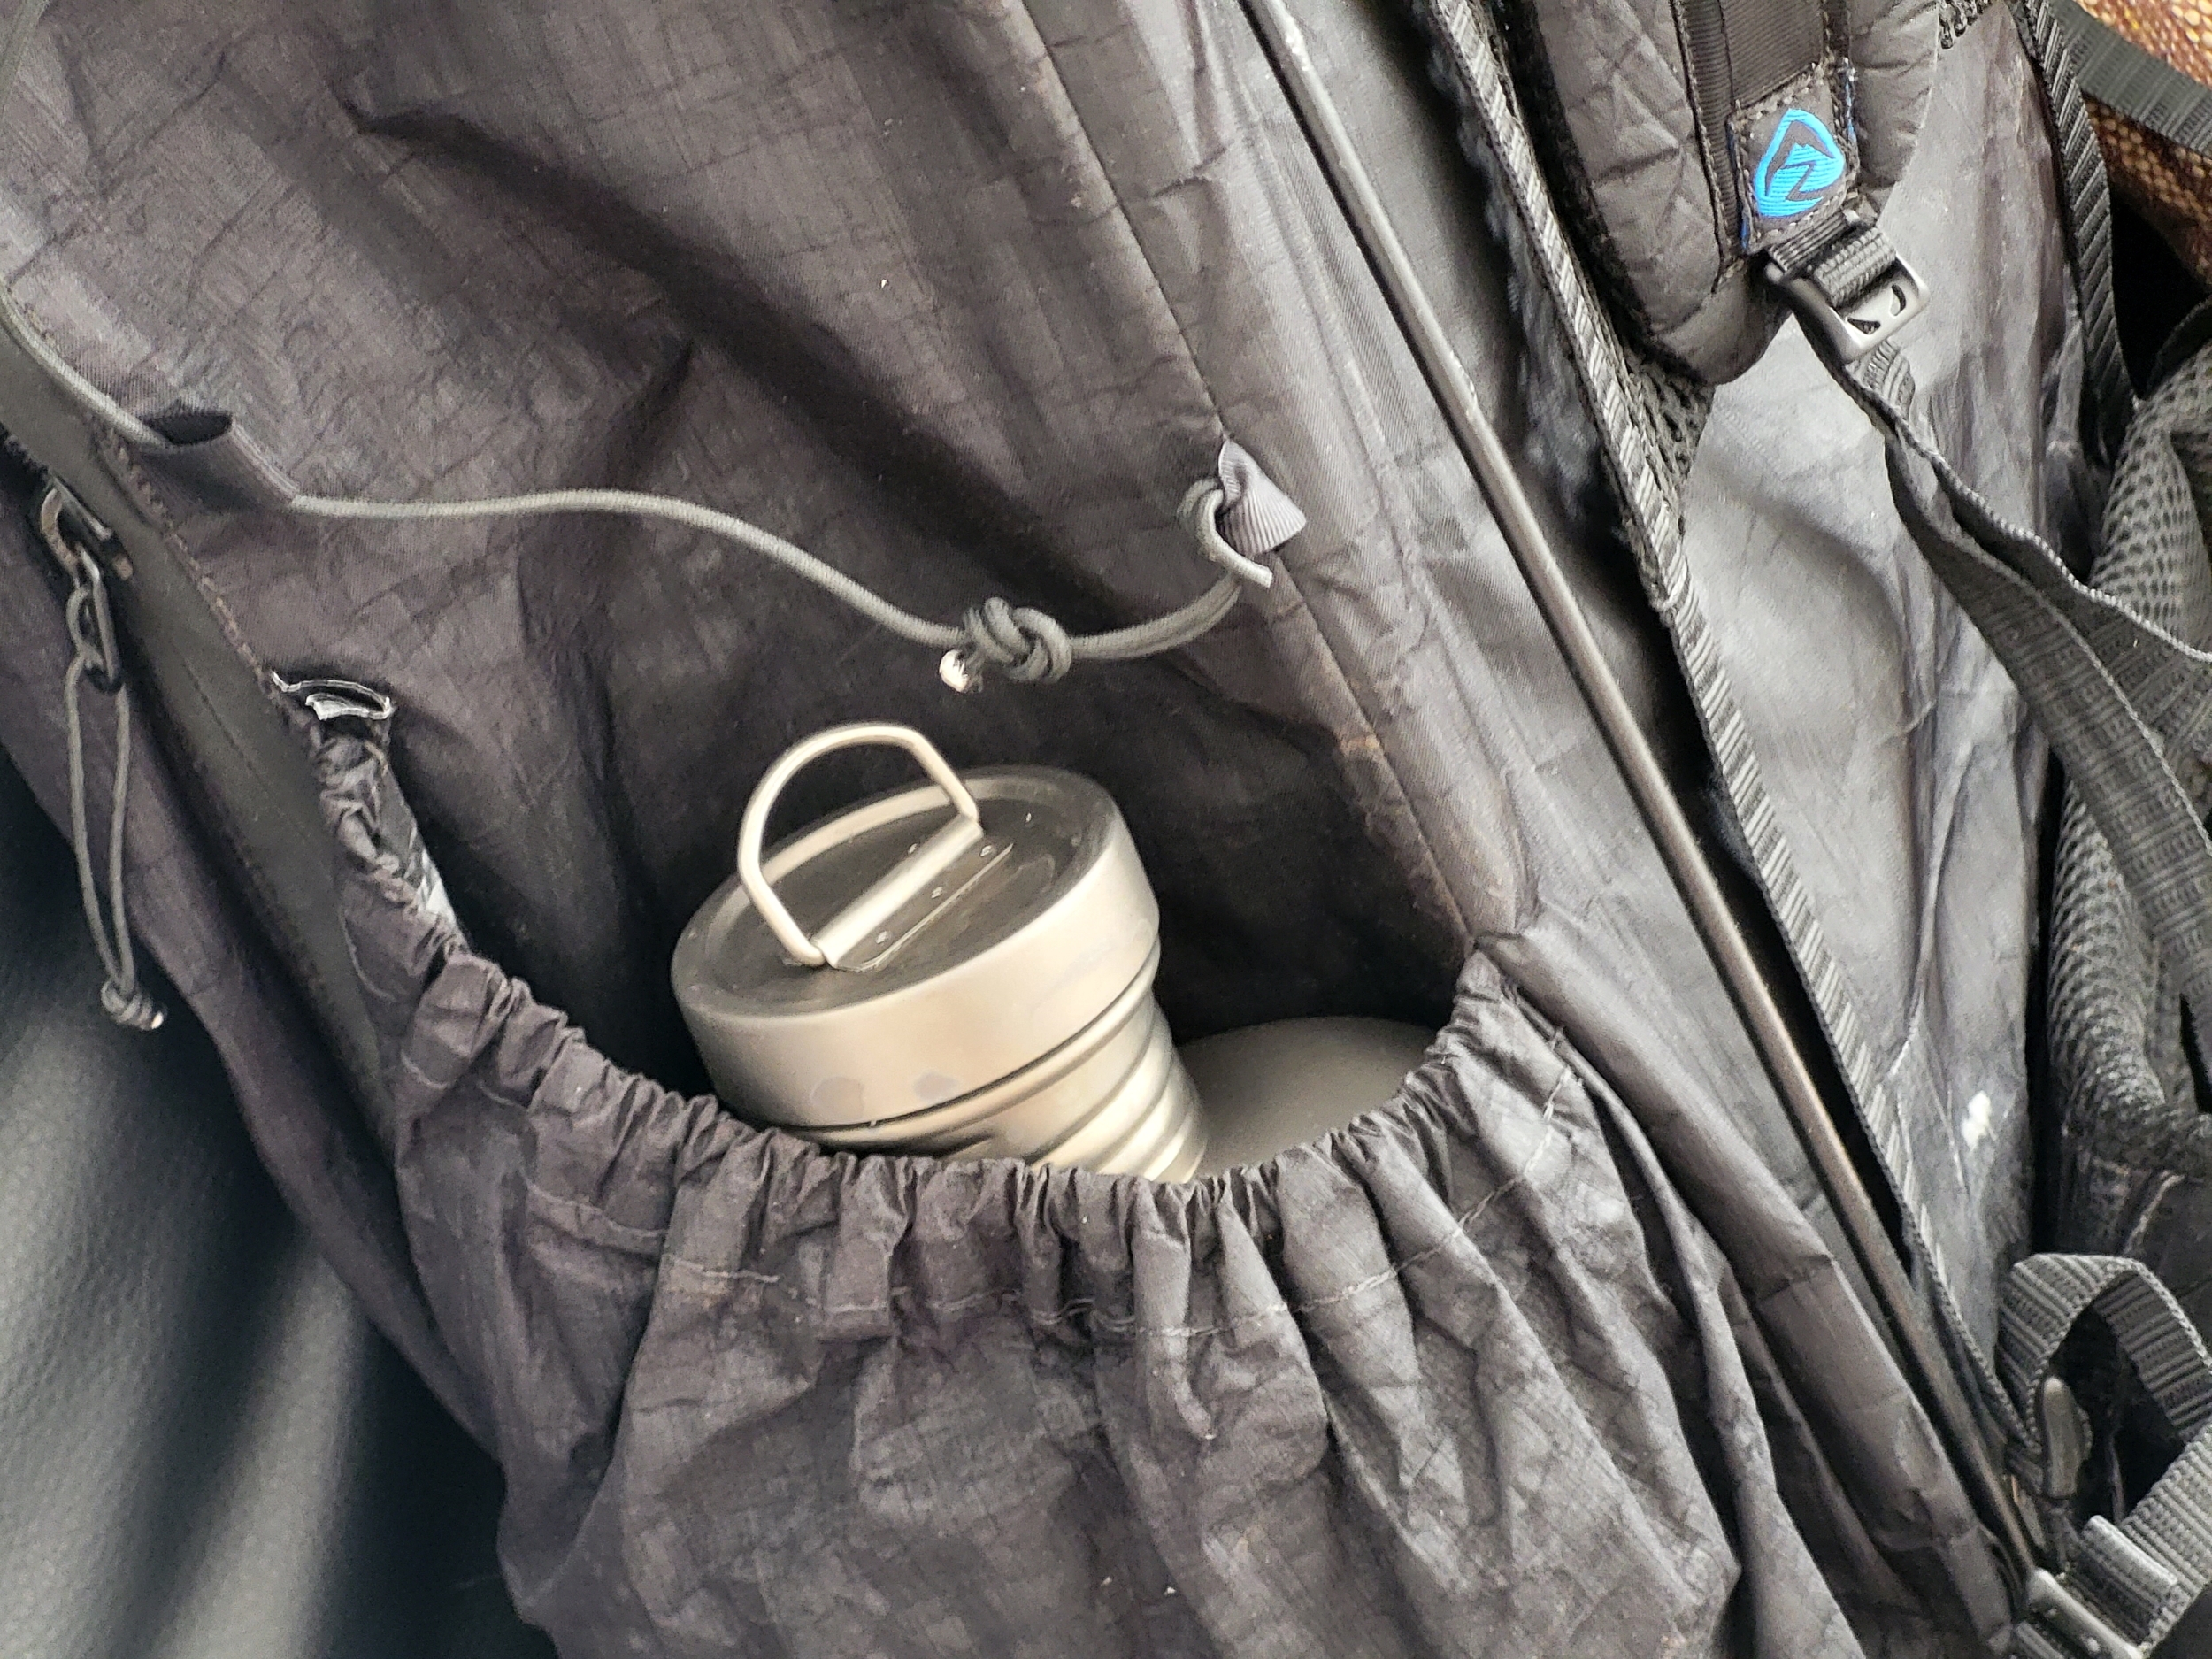 Die Feldflasche des Keith Titanium Ti3060 Canteen Mess Kit lässt sich super in der Seitentasche des Zpacks Arc Zip Rucksacks verstauen